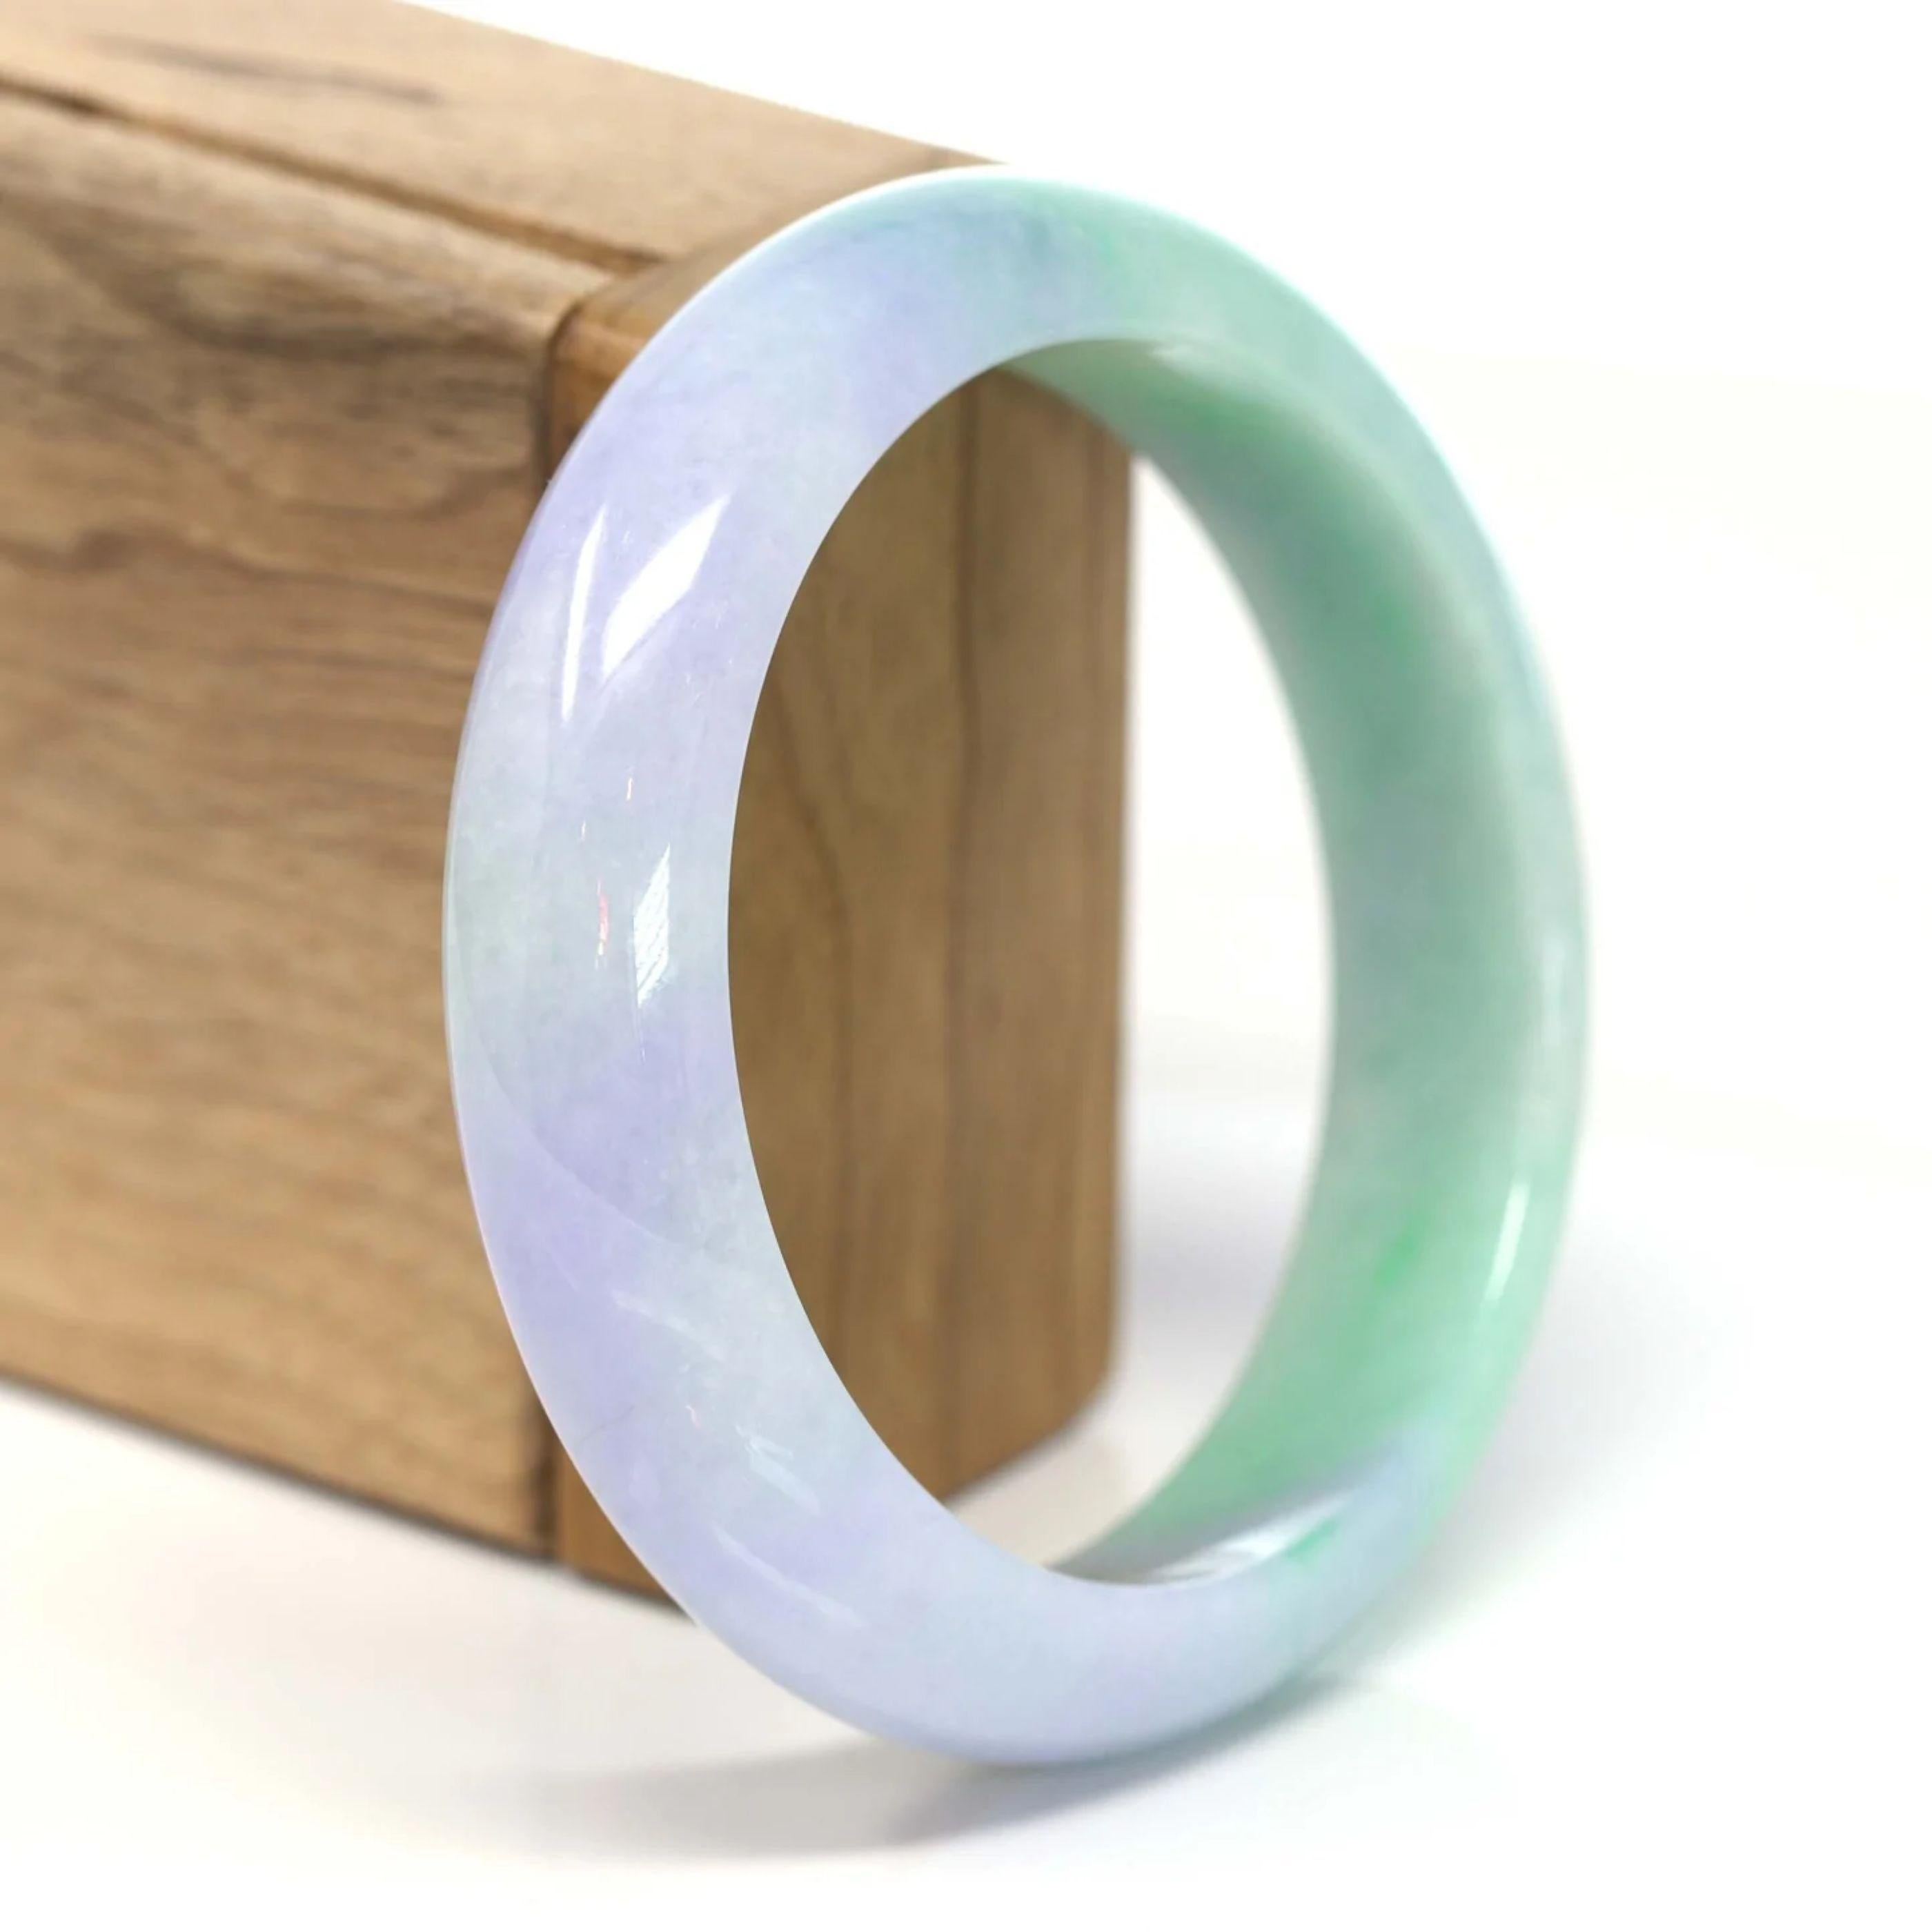 * INTRODUCTION--- Véritable bracelet birman en jadéite. Ce bracelet est fabriqué avec du jade birman authentique de très haute qualité. La texture du jade est très lisse et translucide avec des couleurs lavande et vertes à l'intérieur. L'ensemble de